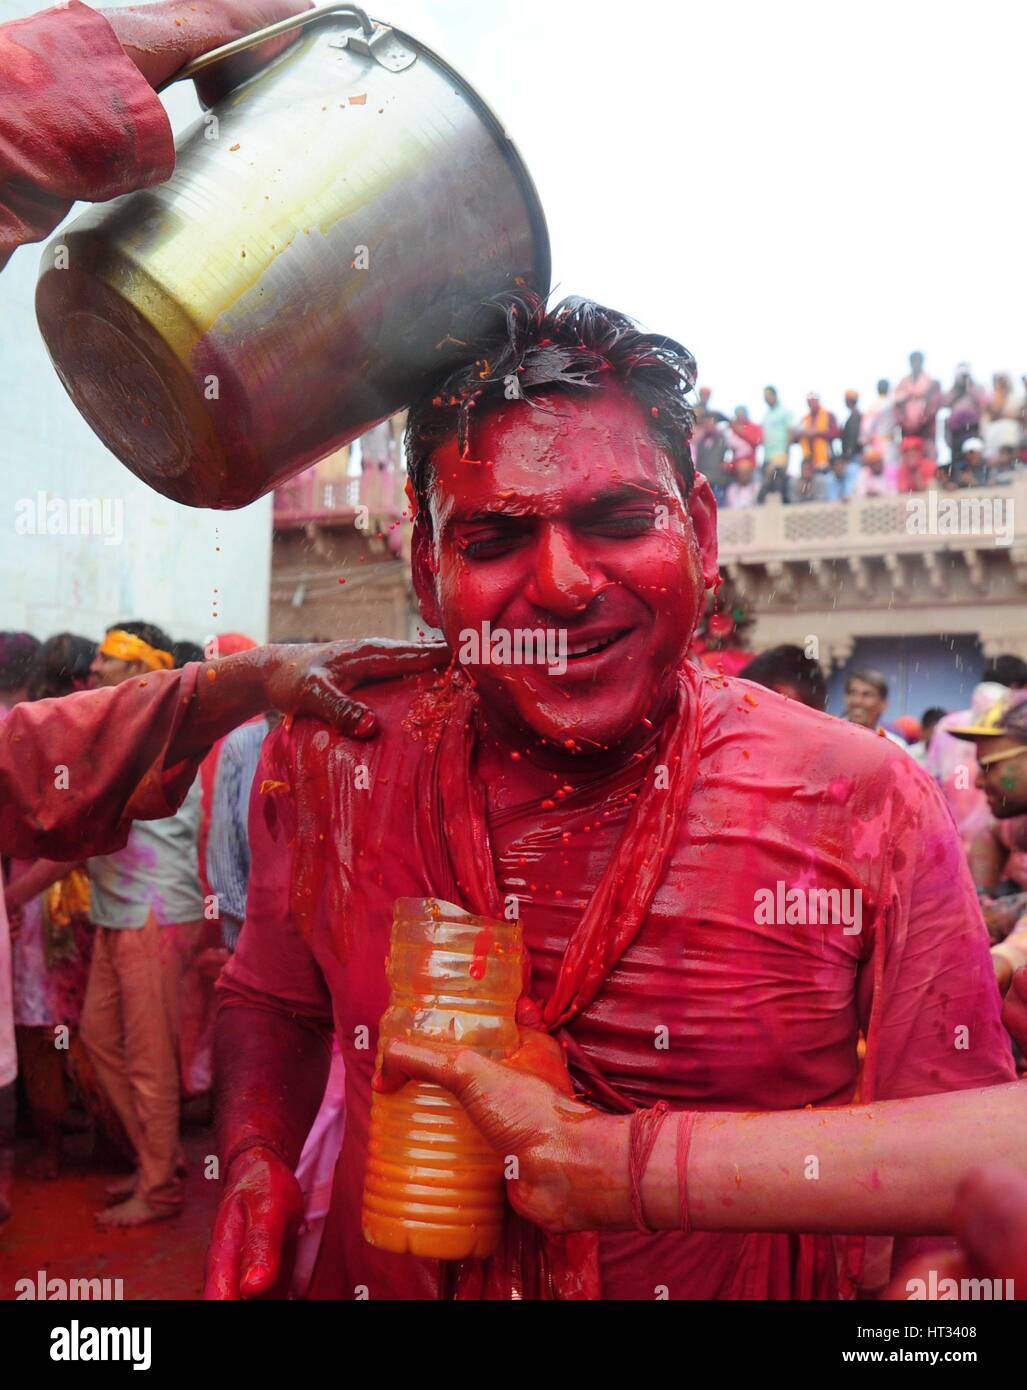 Mathura, Uttar Pradesh, Indien. 7. März 2017.  Eine indisch-hinduistischen Anhänger Gießen Farbe Wasser ein weiterer Anhänger nehmen Teil an dem jährlichen Lathmar Holi-Festival in Nandgaon Dorf, Mathura, Indien, 7. März 2017. Holi ist das hinduistische Frühlingsfest der Farben. In Barsana feiern die Menschen eine Variation von Holi Holi 'Lathmar', was bedeutet "schlagen mit Stöcken" genannt. Während der Lathmar Holi-Festival, die Frauen der Nandgaon, der Heimatstadt des hinduistischen Gott Krishna, schlagen die Männer aus Barsana, dem Geburtsort von Radha, mit Holzstöcken Credit: ZUMA Press, Inc./Alamy Live News Stockfoto